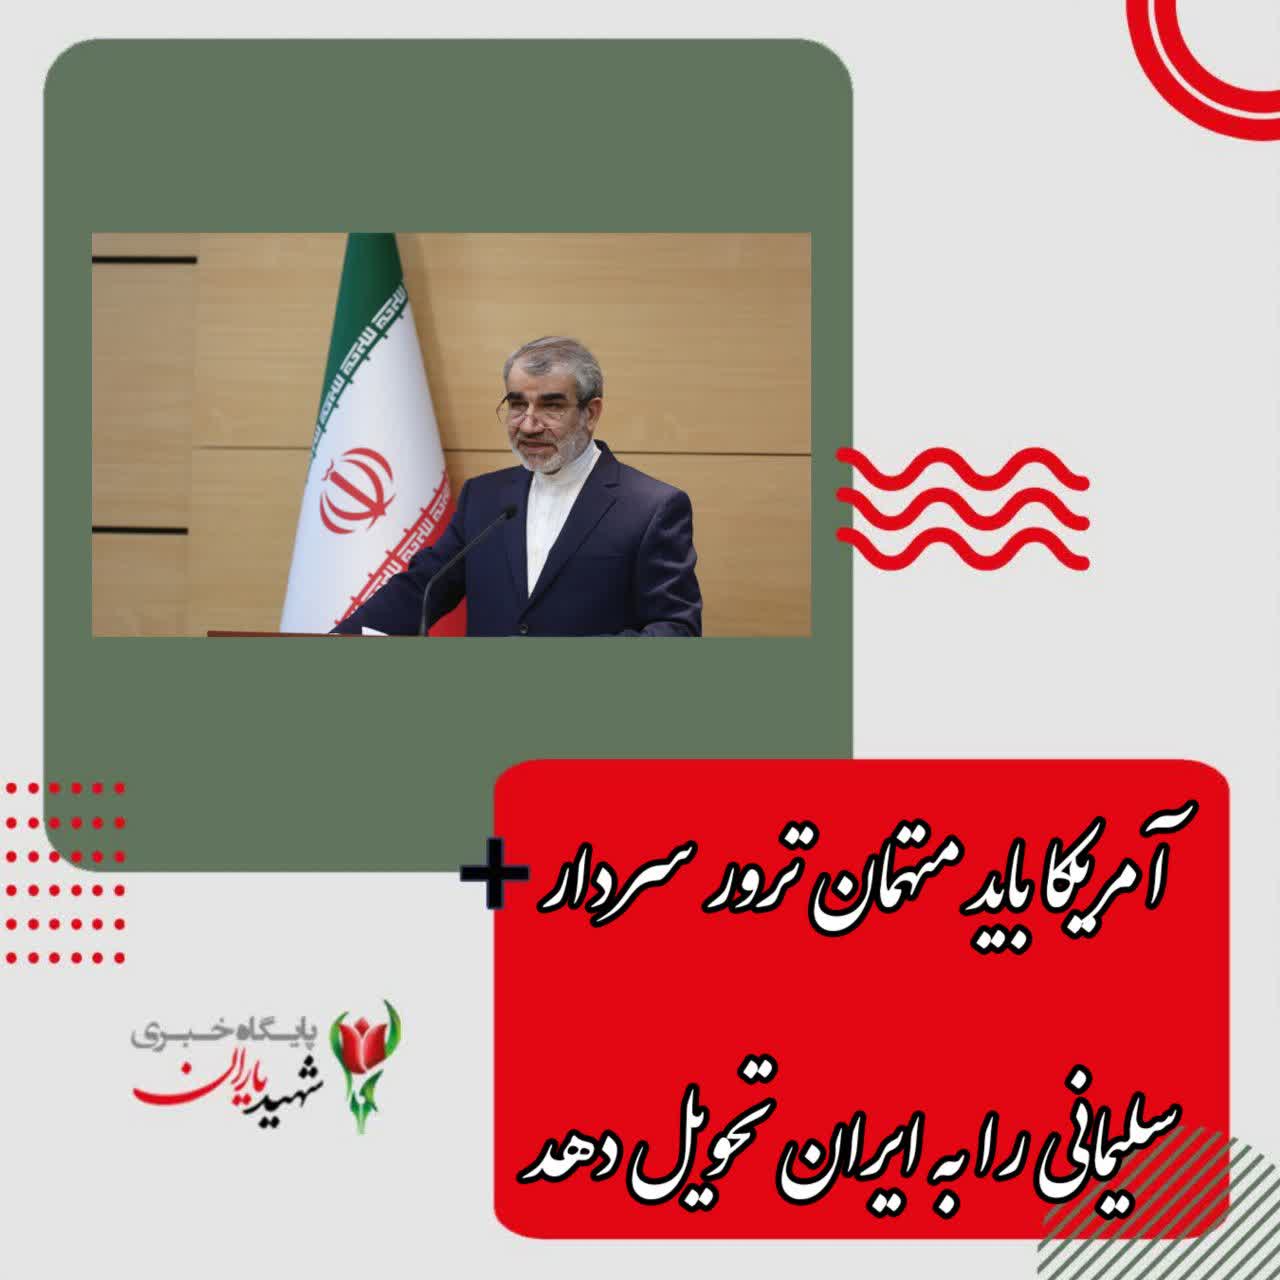 رئیس کمیته ویژه پیگیری حقوقی پرونده ترور سردار سلیمانی: